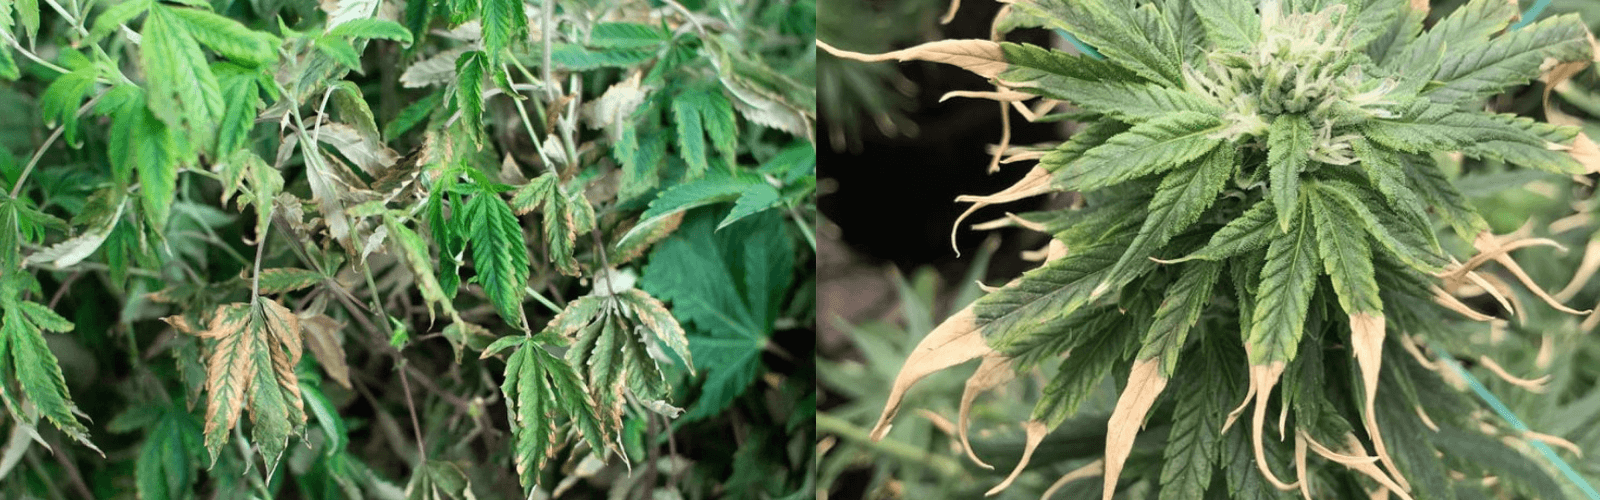 sobrealimentación de la planta de cannabis -